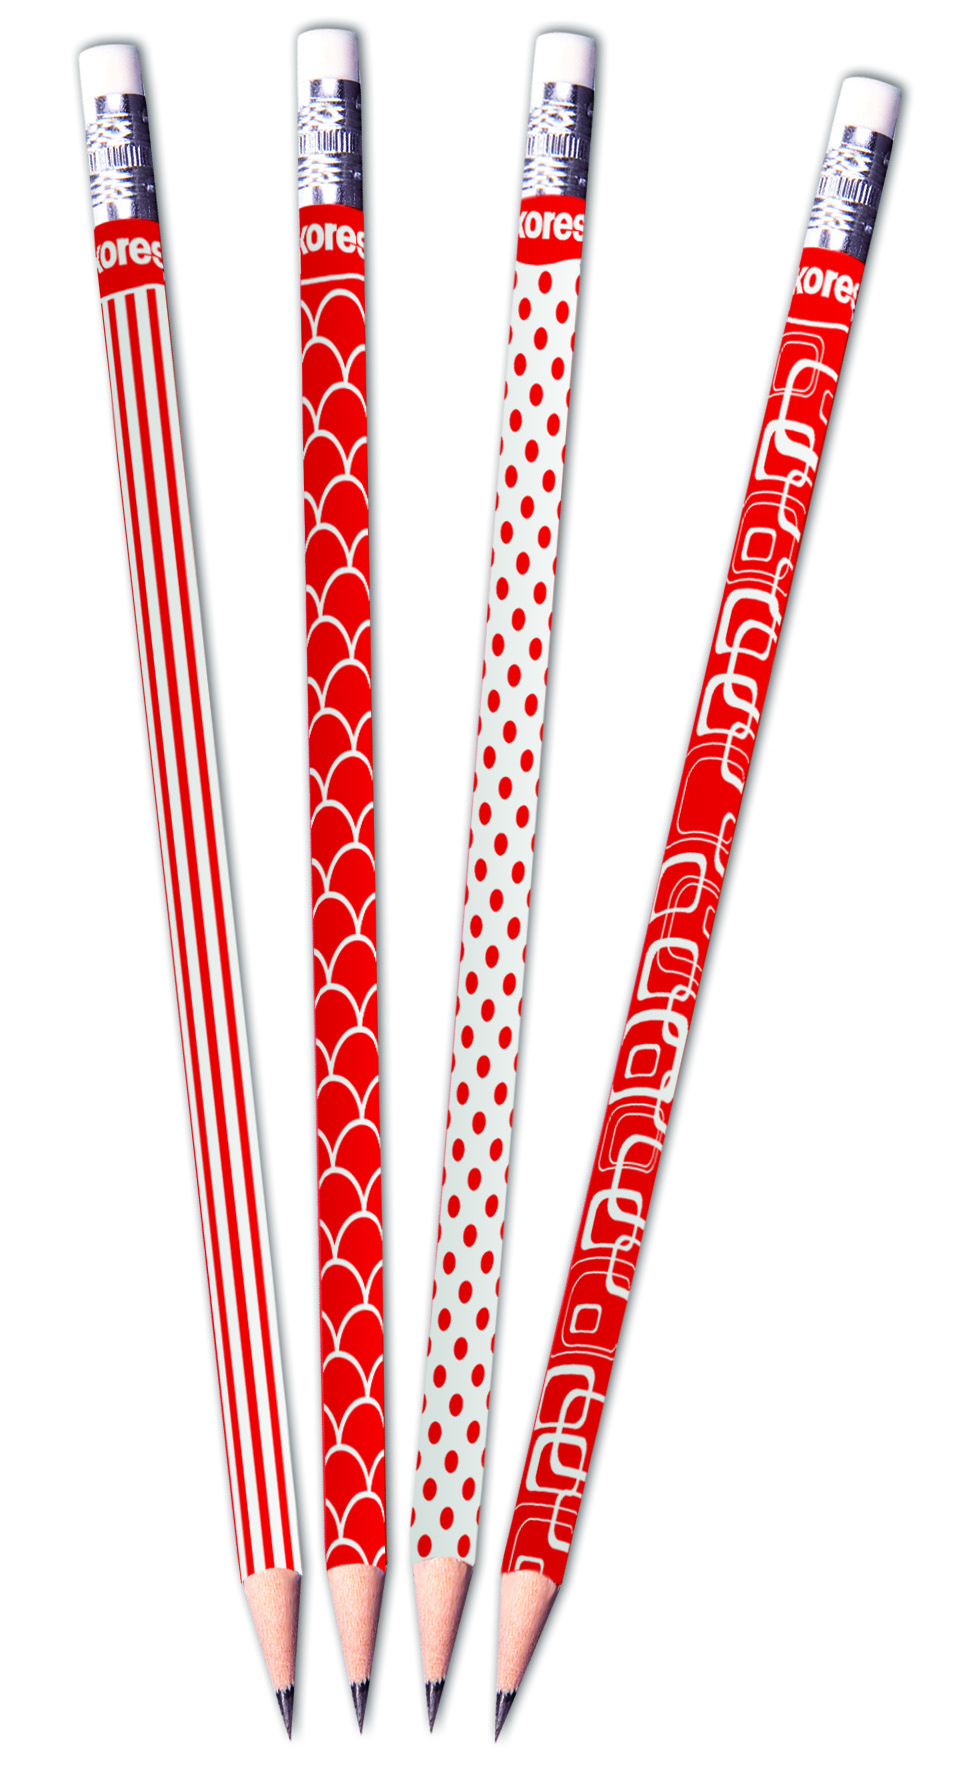 Trojhranná tužka Kores red&white - HB